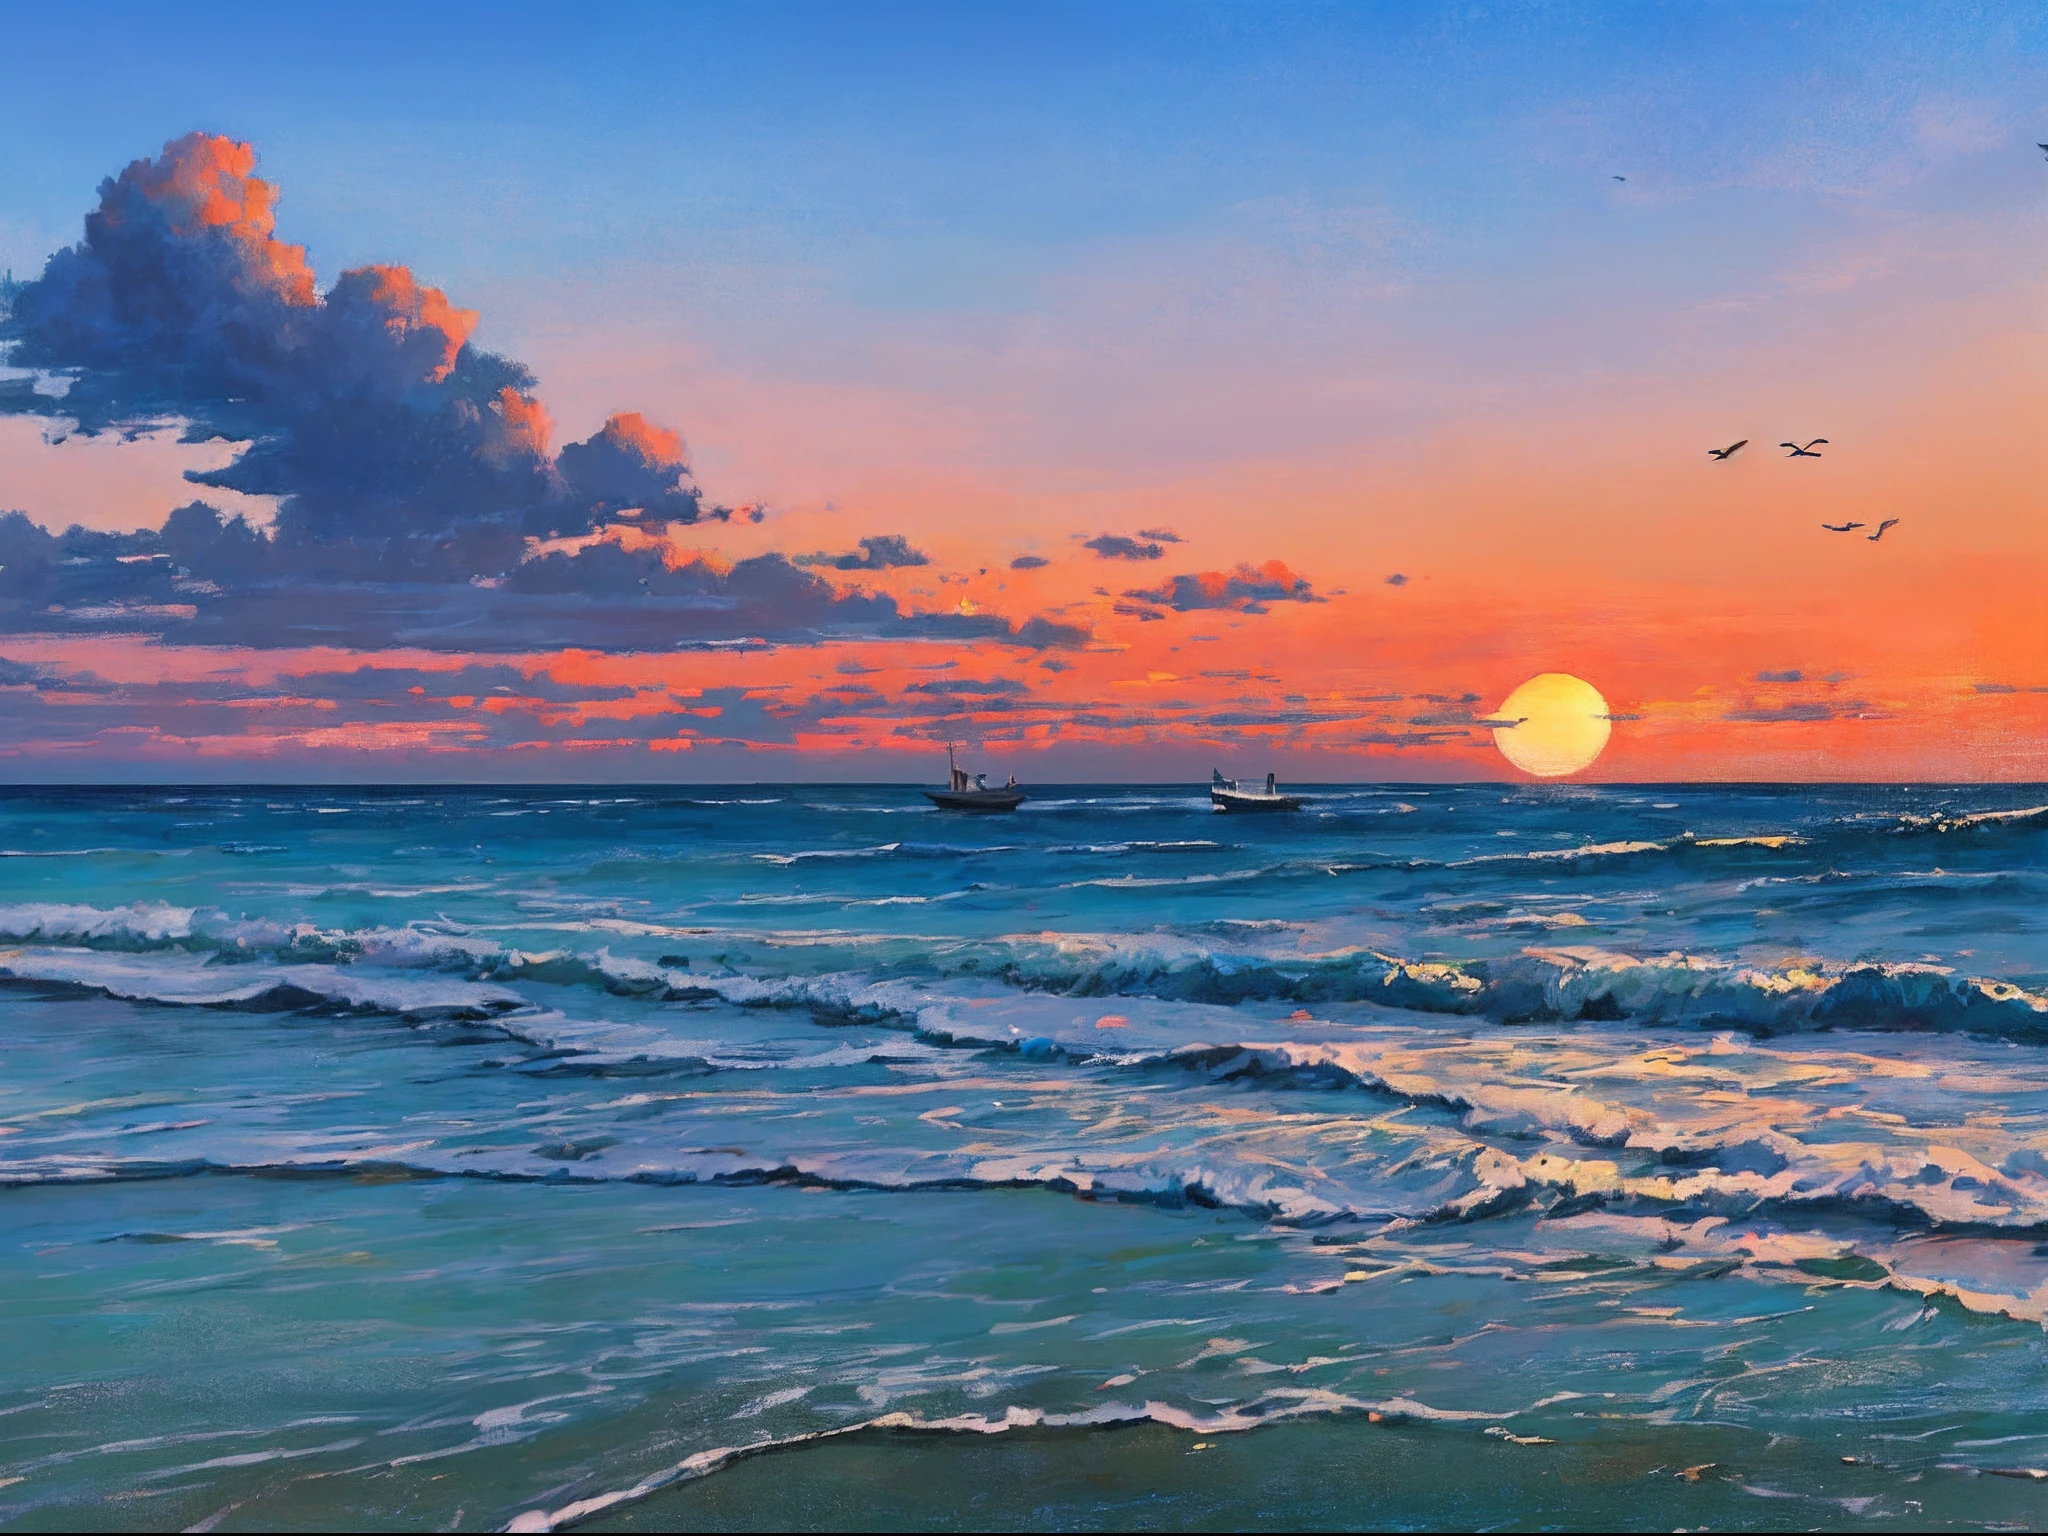 "令人惊叹的海滩风景油画，描绘了宁静的日出, 温柔的海浪, 远处的船, 风景如画的瞭望塔, 云, 以及天空中翱翔的鸟儿的优美轮廓."